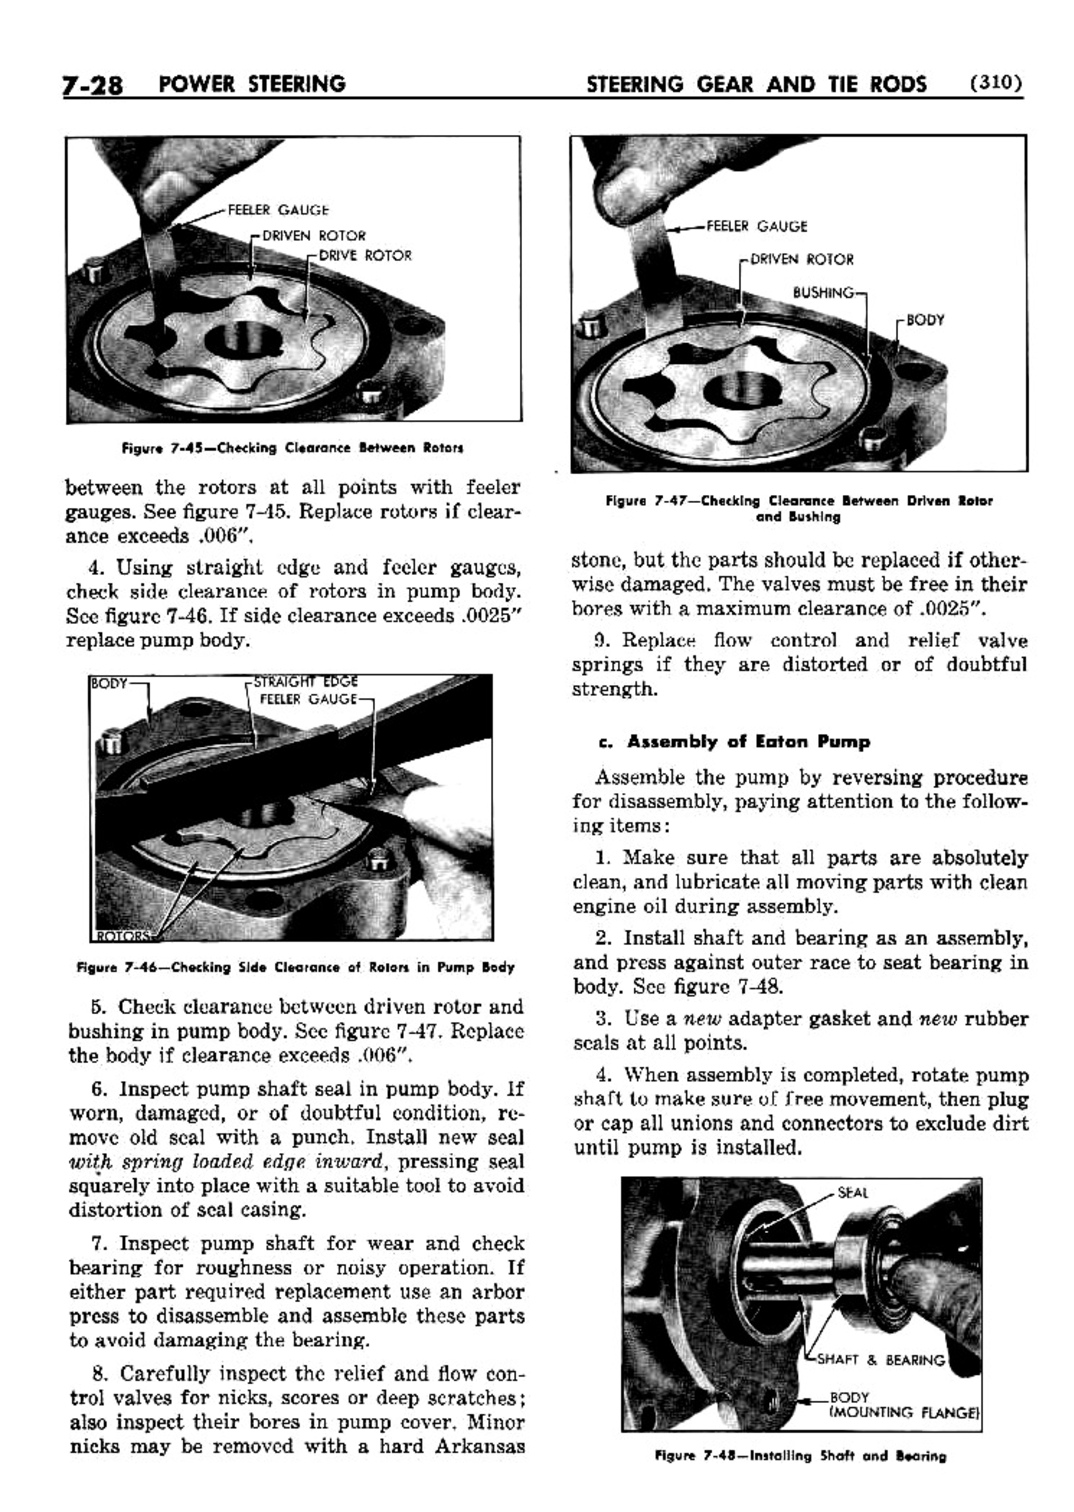 n_08 1952 Buick Shop Manual - Steering-028-028.jpg